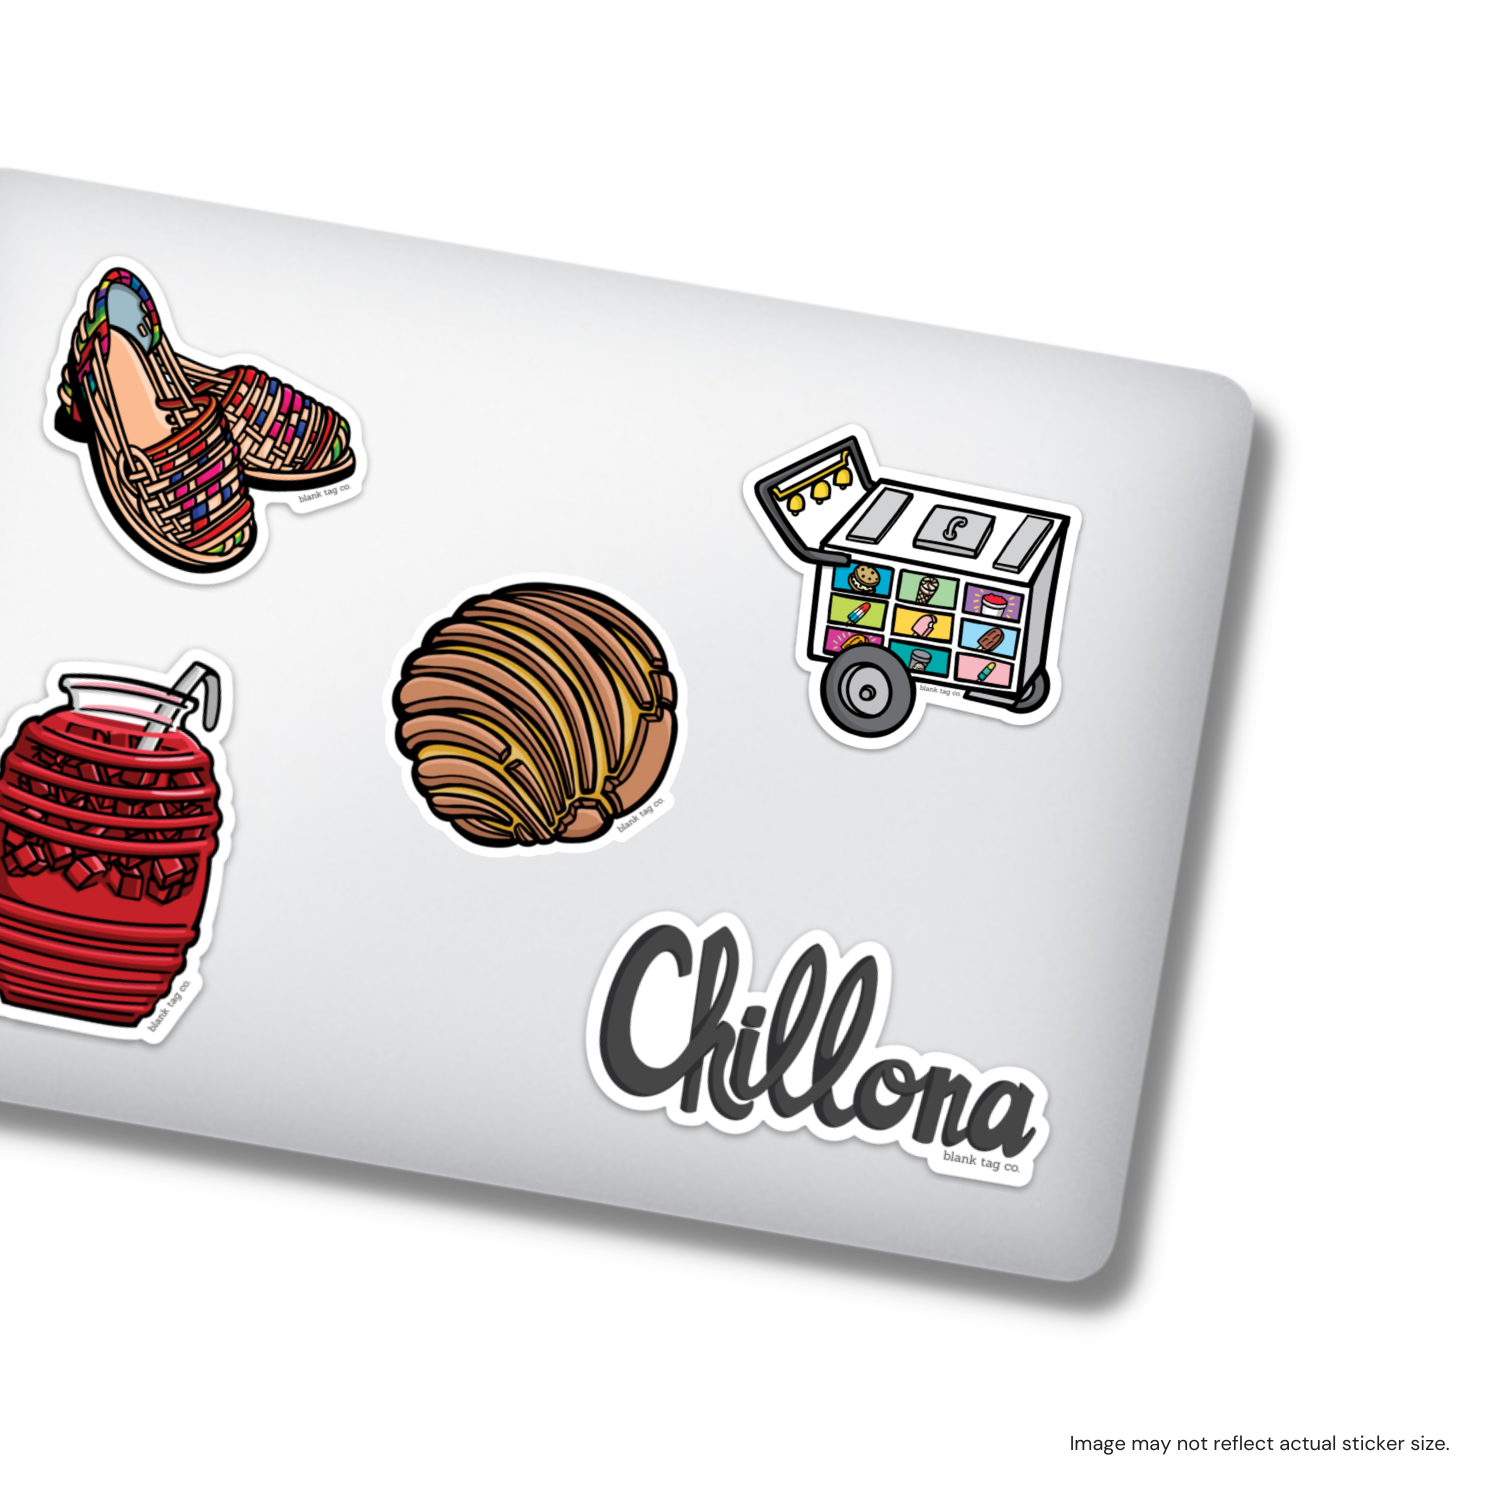 The Chillona Sticker